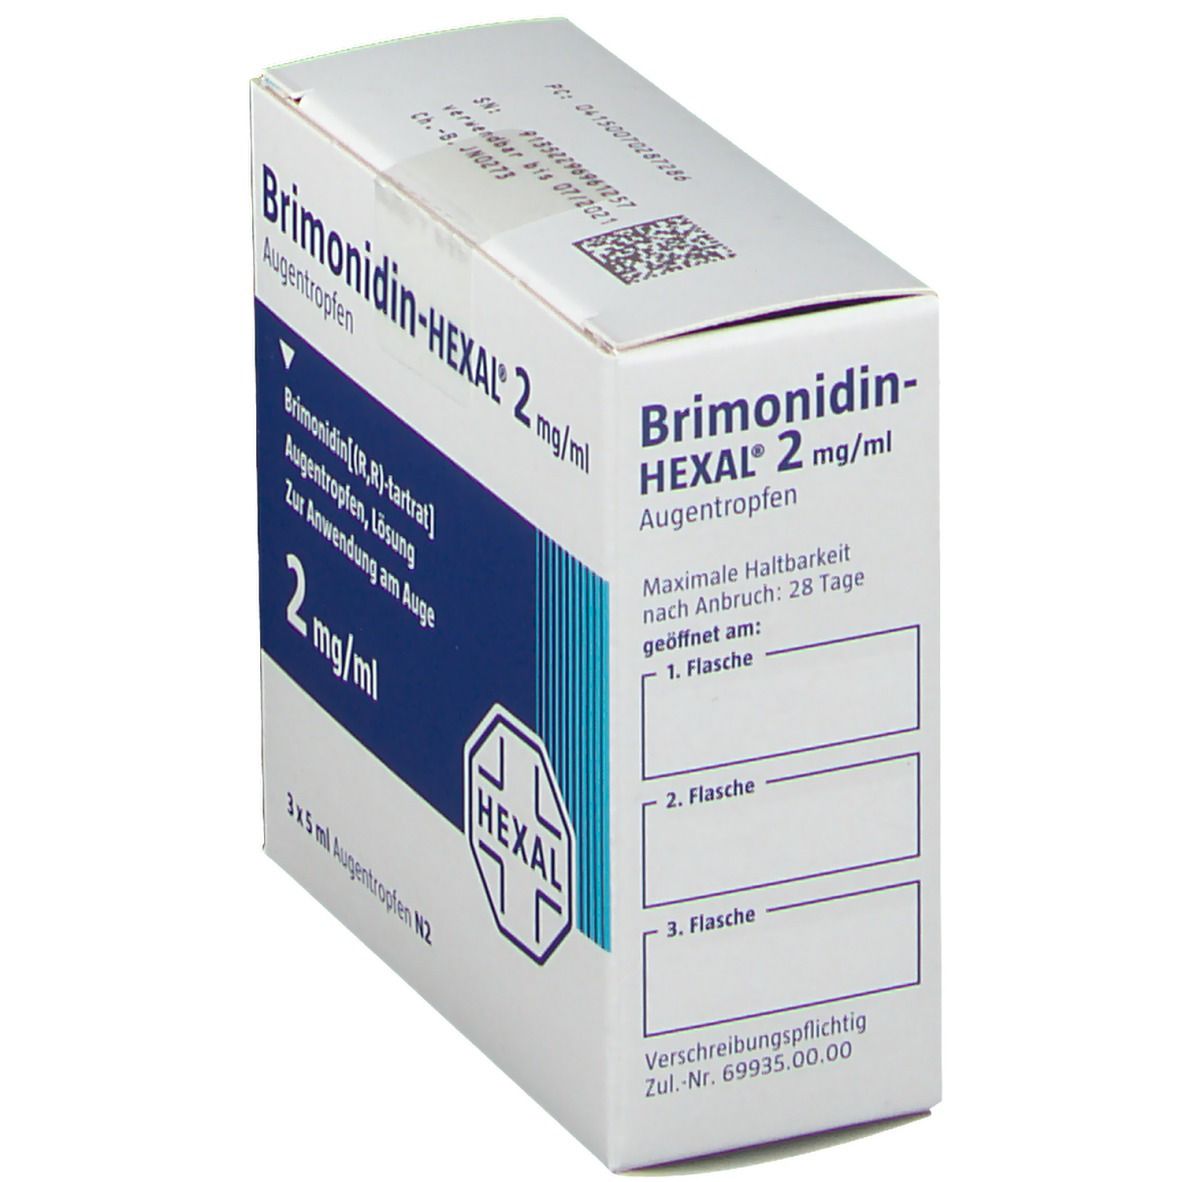 Brimonidin HEXAL® 2 mg/ml Augentropfen